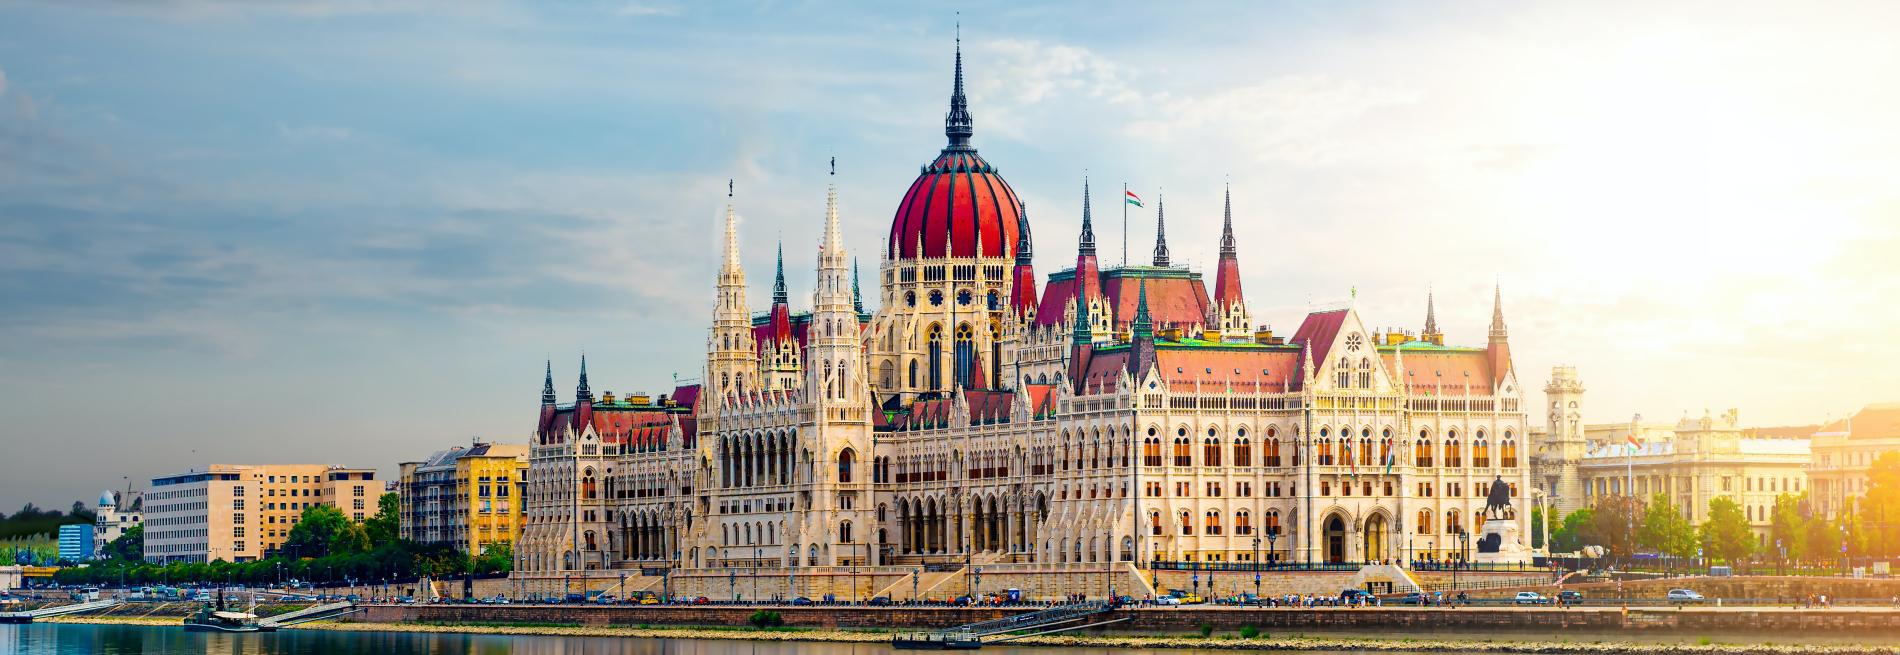 Tour du lịch Hungary